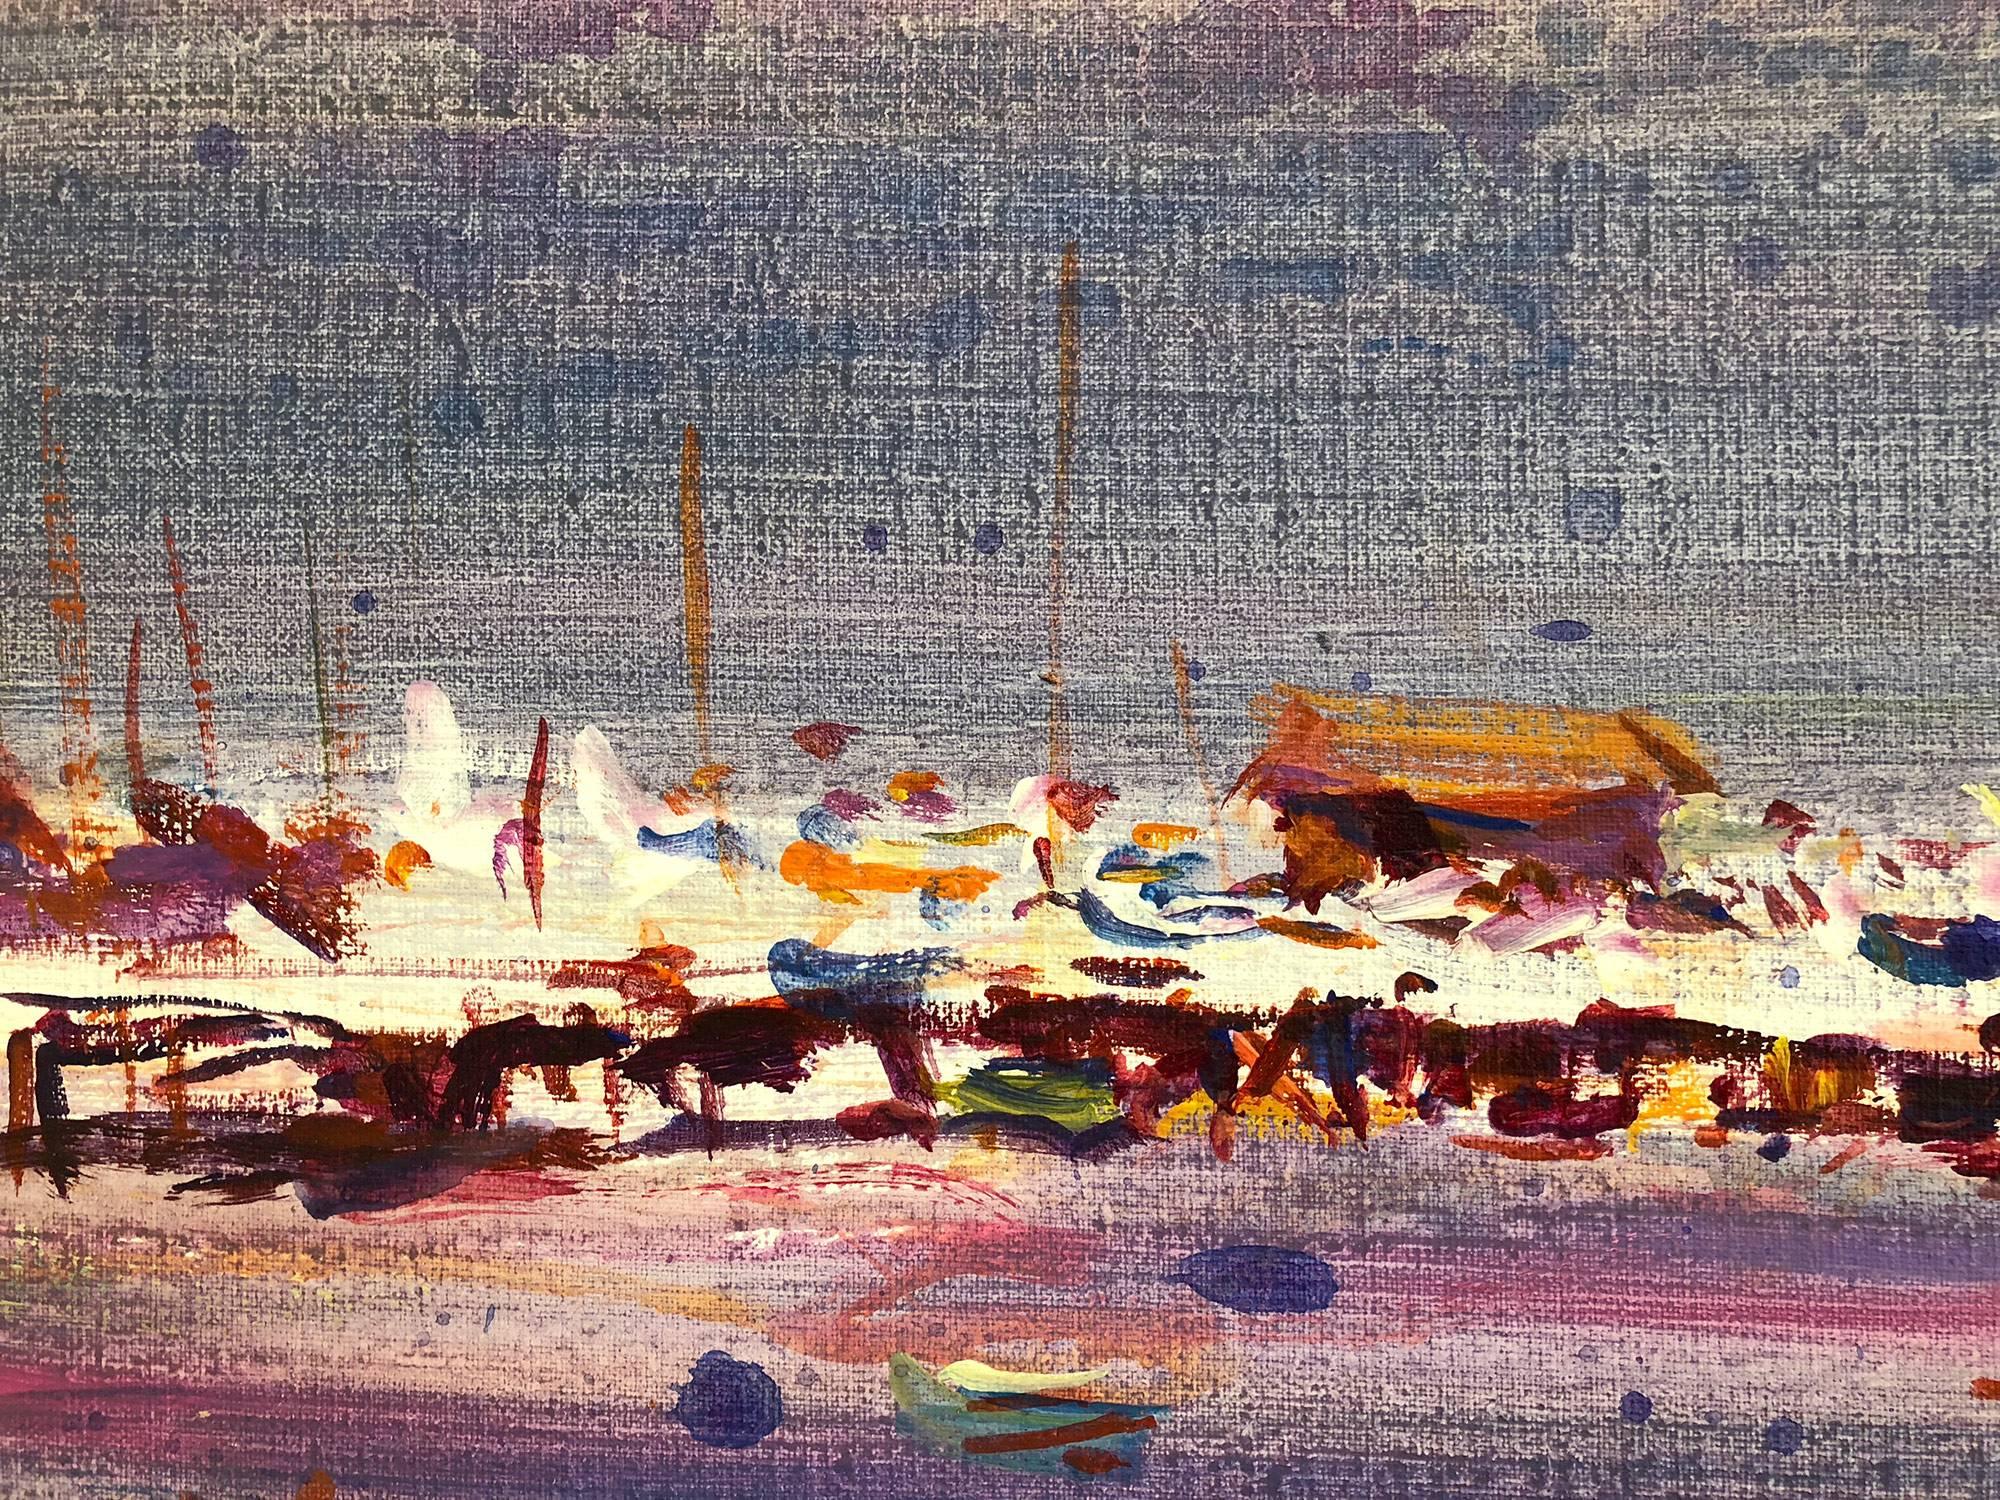 Eine abstrakte Strandszene mit lebhaftem Einsatz von Farbe und komplexen Linien und Farbplatzierungen. Ein starkes modernistisches Ölgemälde aus dem Jahr 1982 mit Segelbooten, Figuren und einer endlosen Skyline. Freiman, der für seine Figuren auf